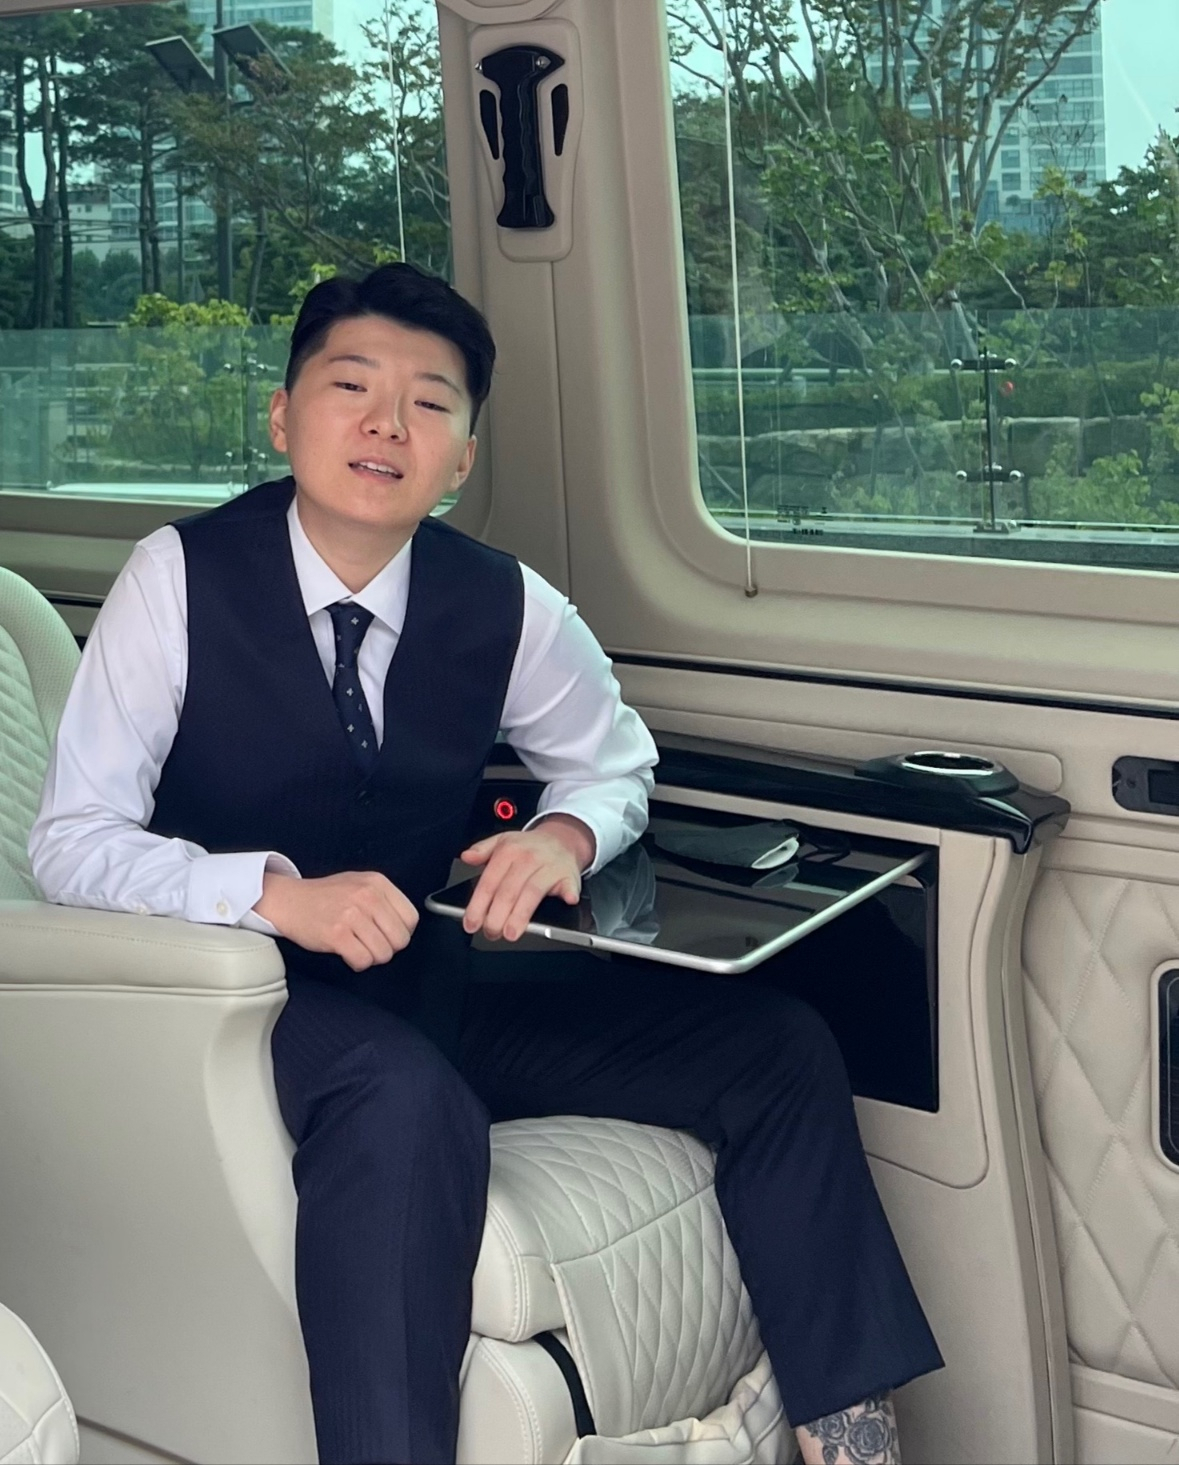 Jeon sits inside a limousine. (Kim Min-seok)